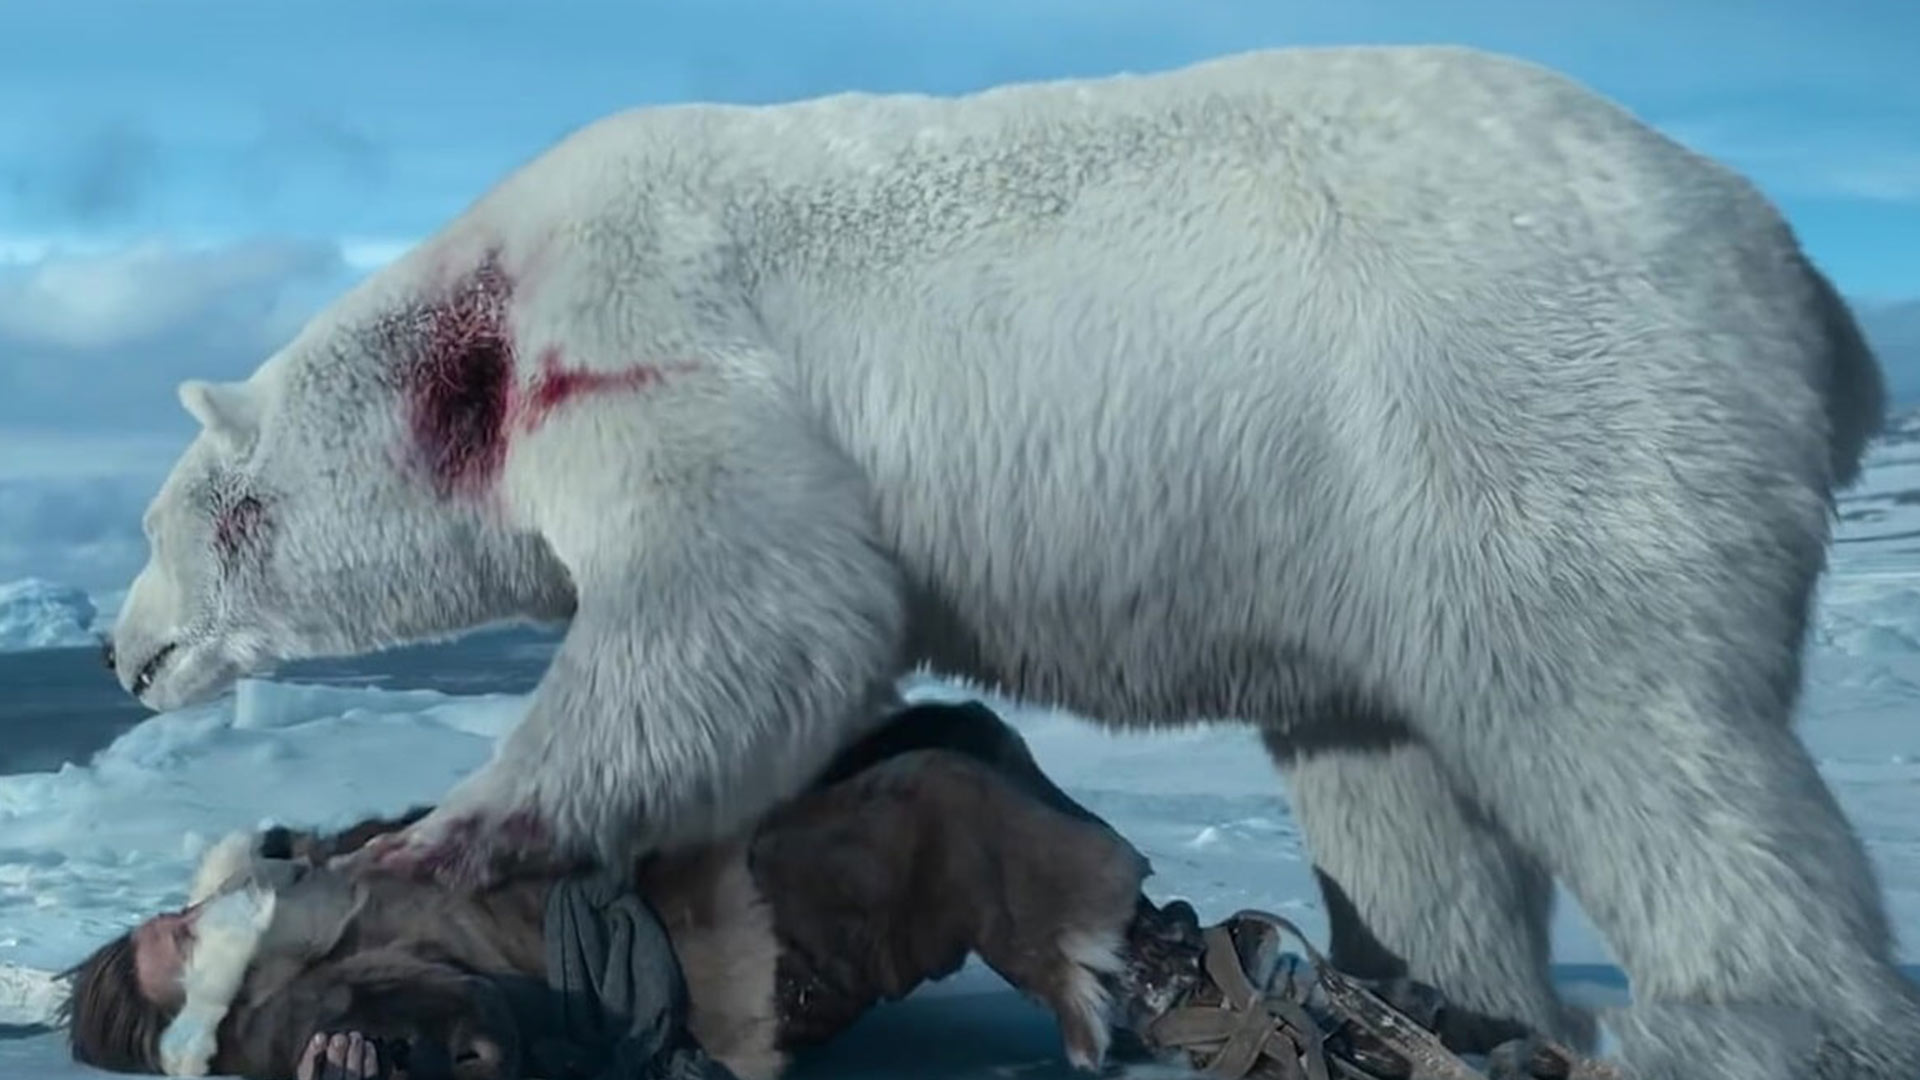 میکلسن در رویایویی با خرس قطبی در فیلم در برابر یخ